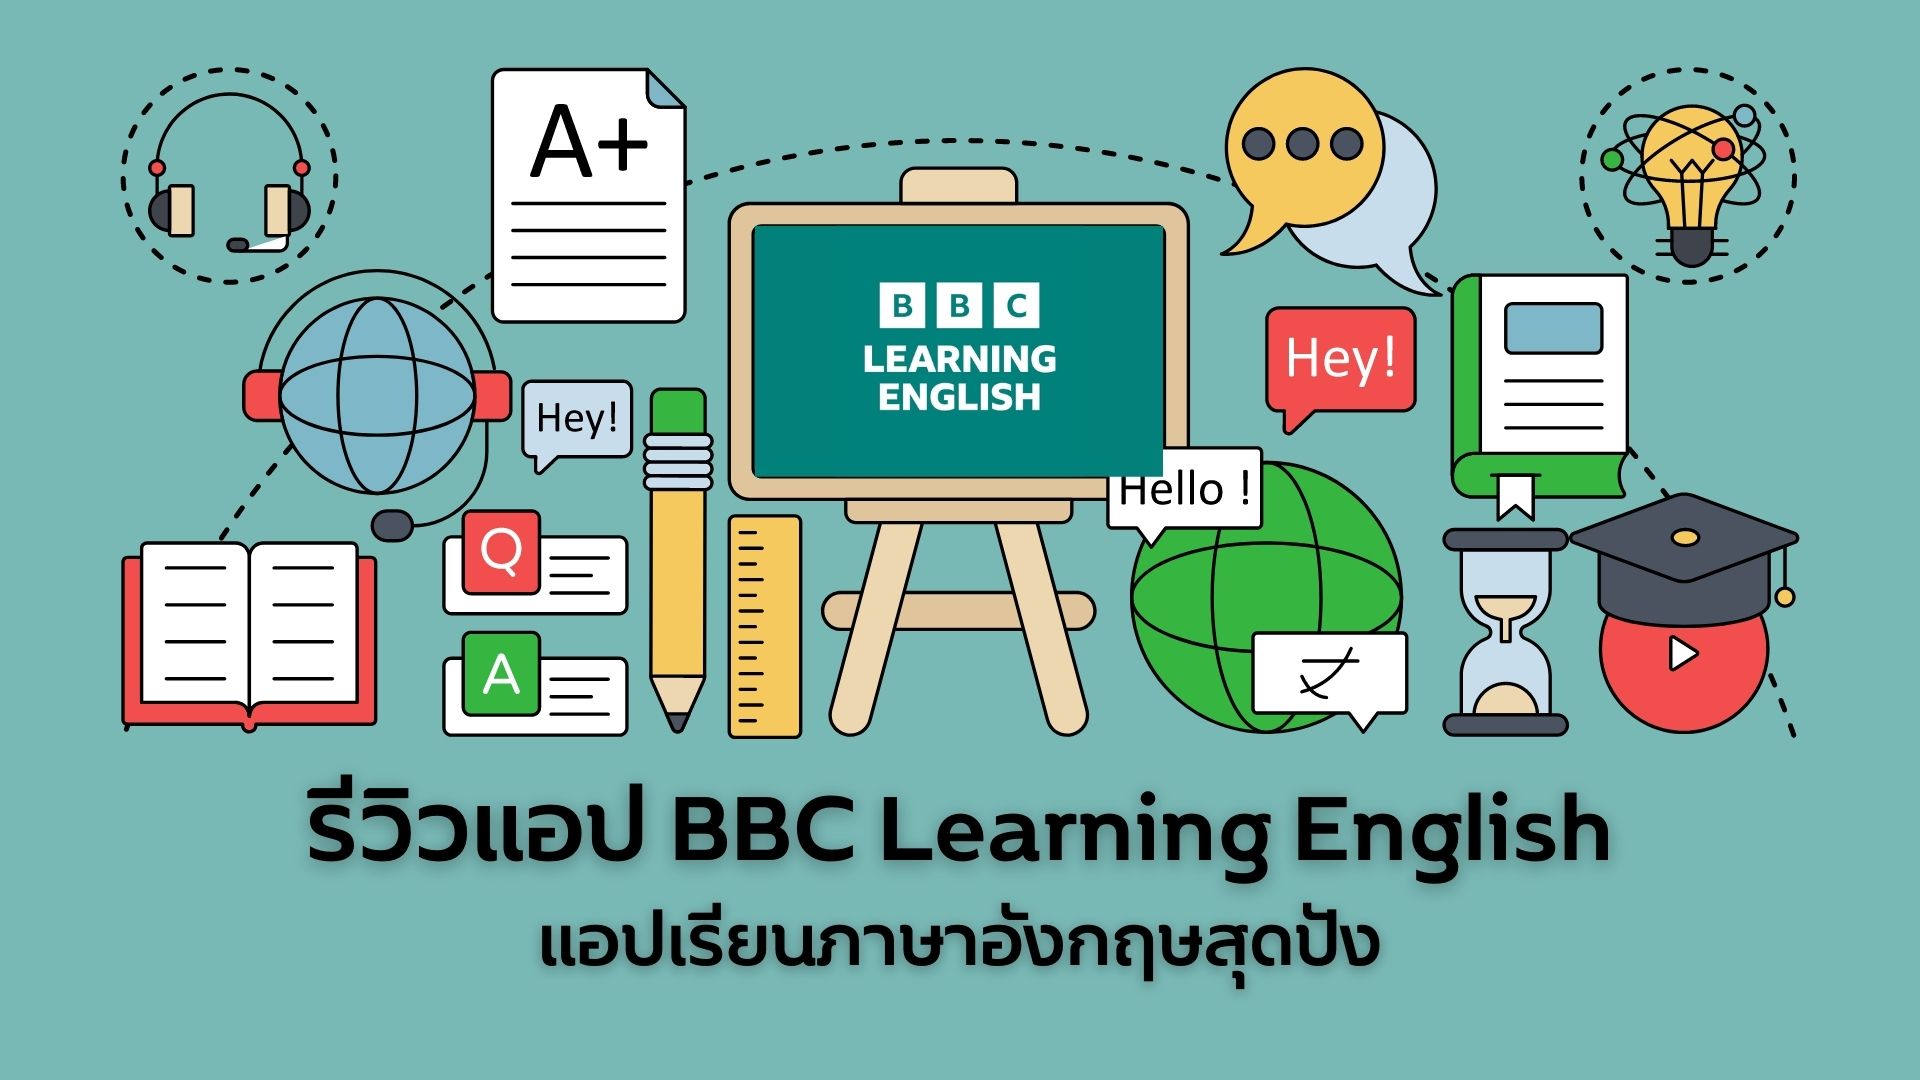 แอพเพื่อการศึกษา BBC Learning English